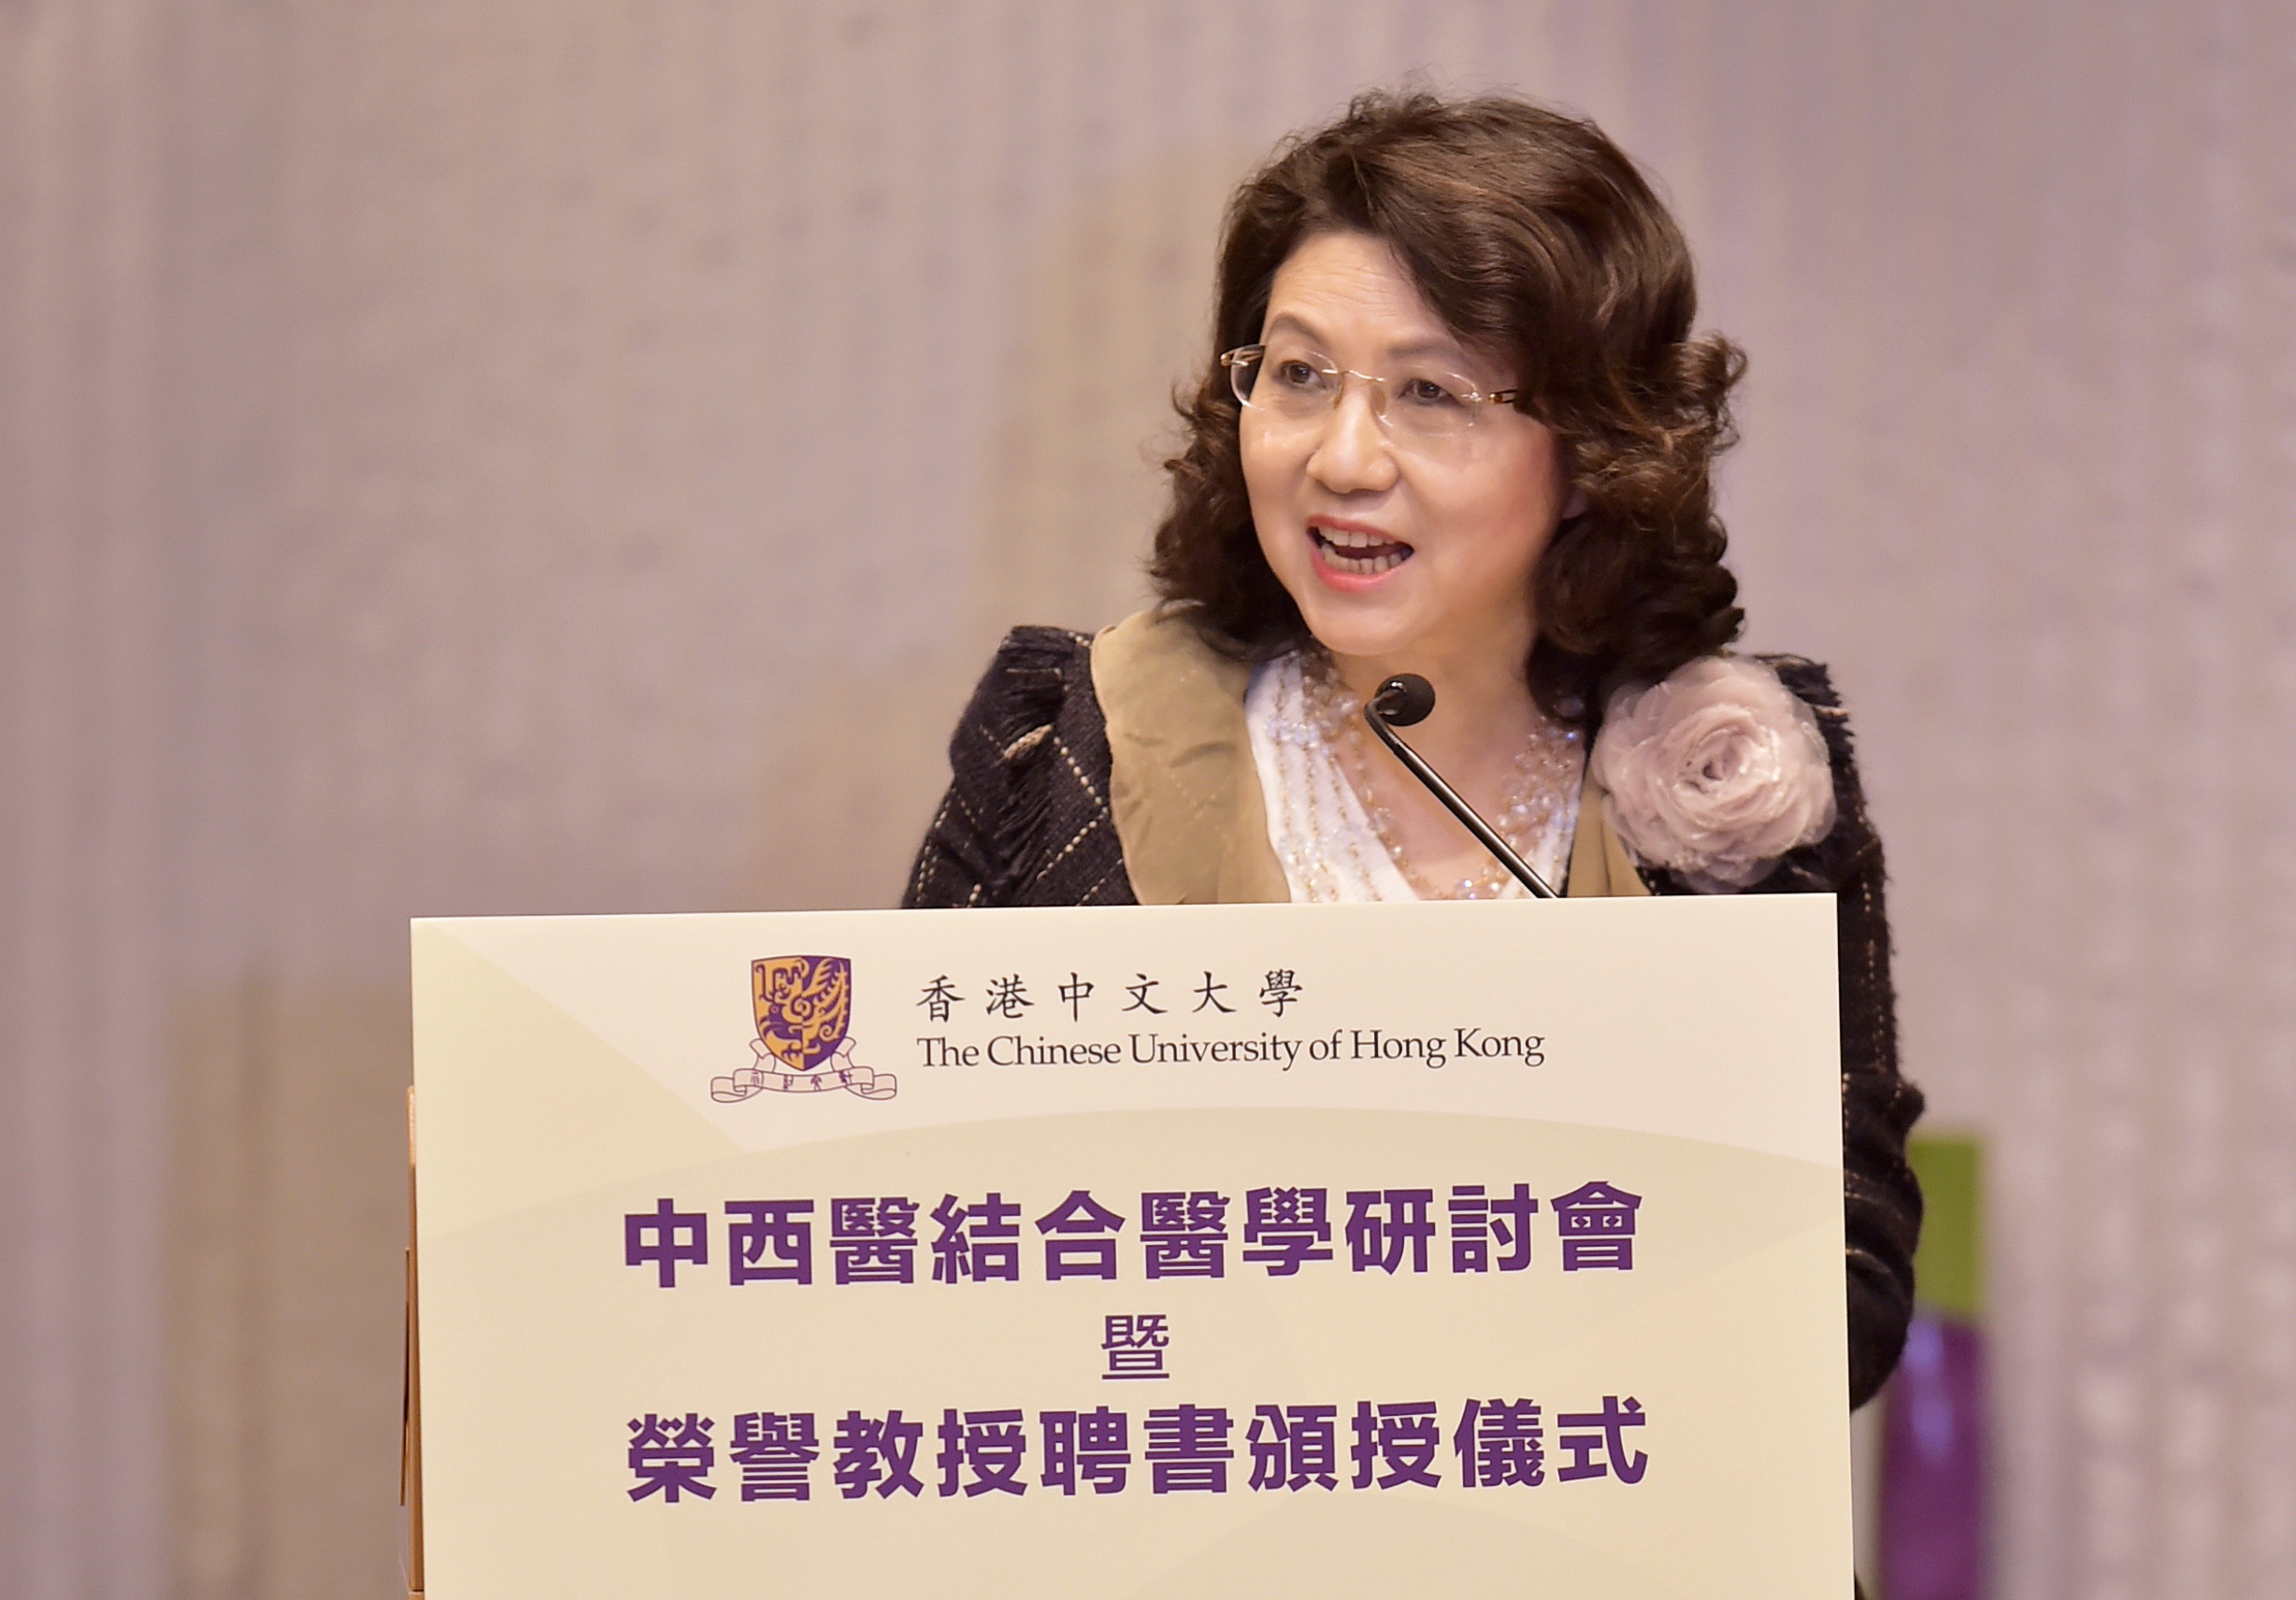 創新科技署署長暨中藥研究及發展委員會主席王榮珍女士致辭。